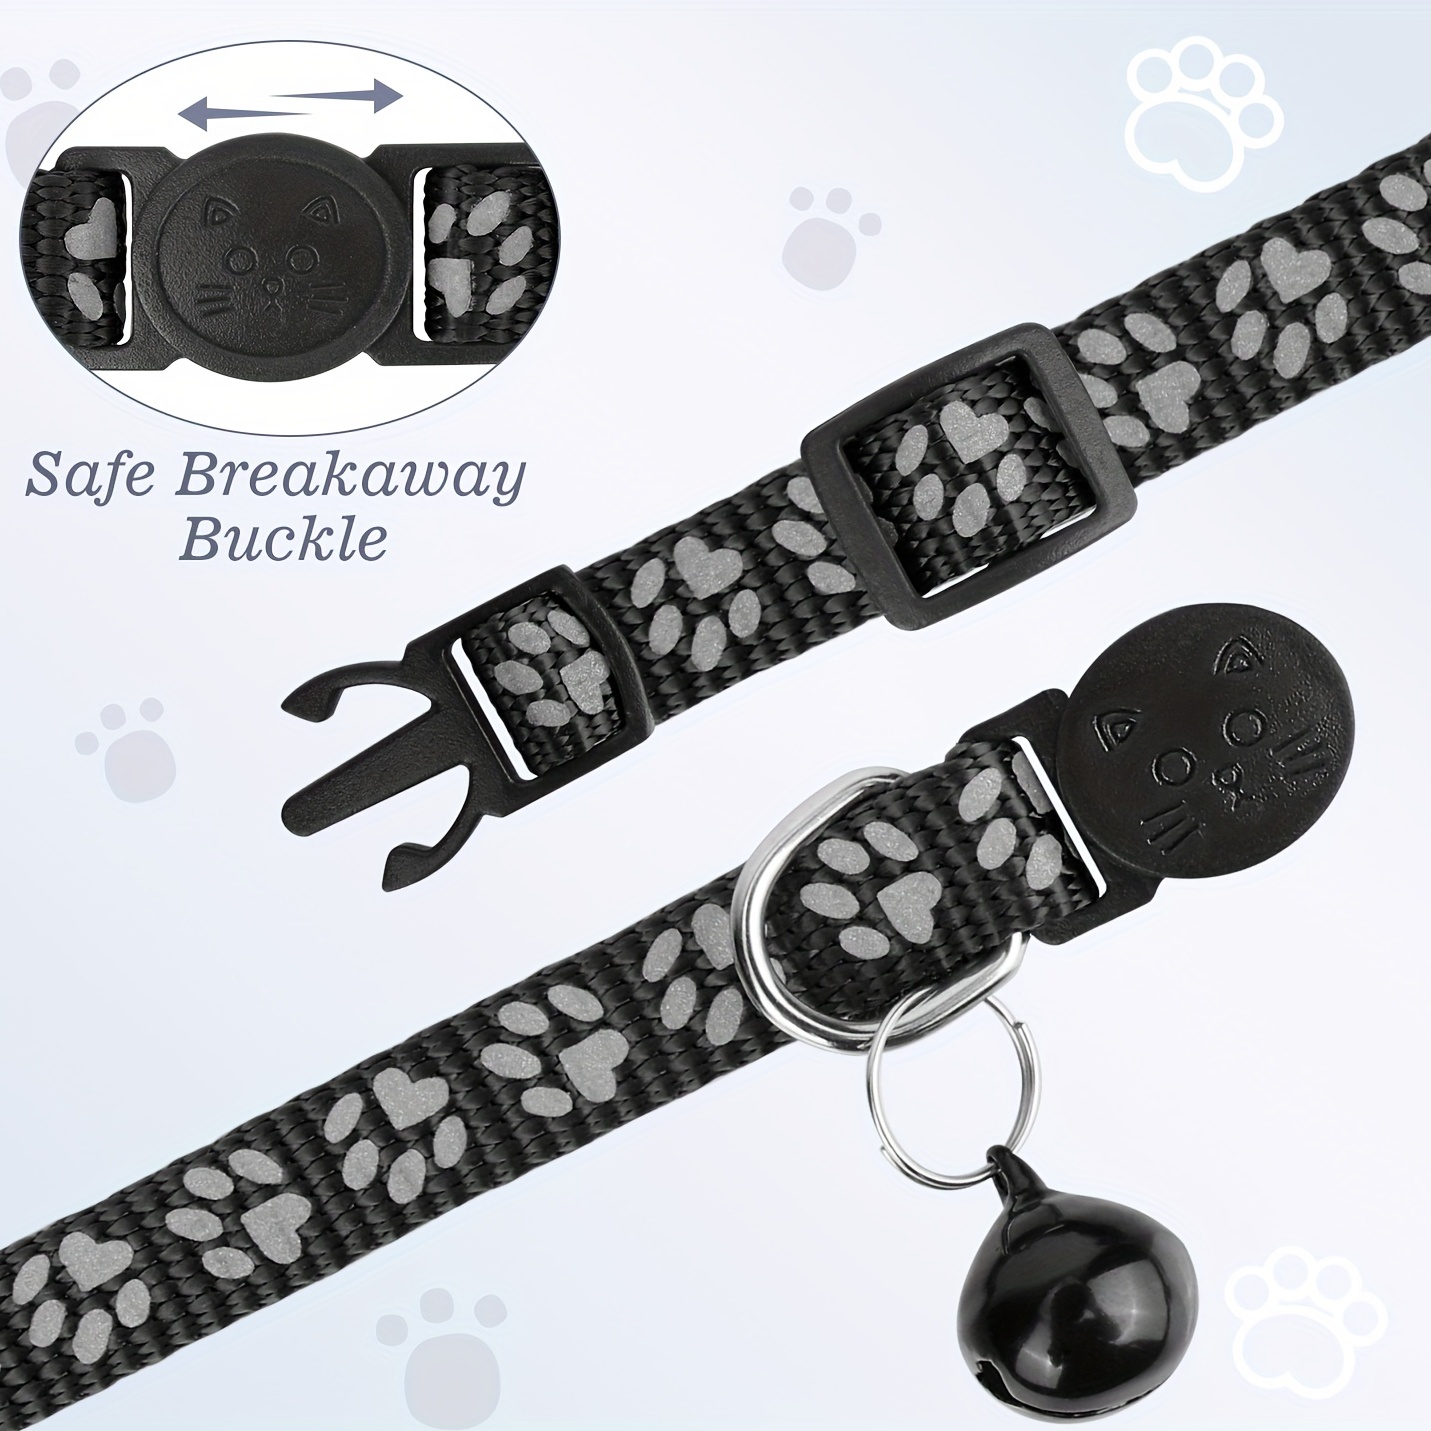 Airtag - Collar de gato con etiqueta de nombre y campana, collar  reflectante para gatos para niñas y niños, collar GPS desmontable y  ajustable para